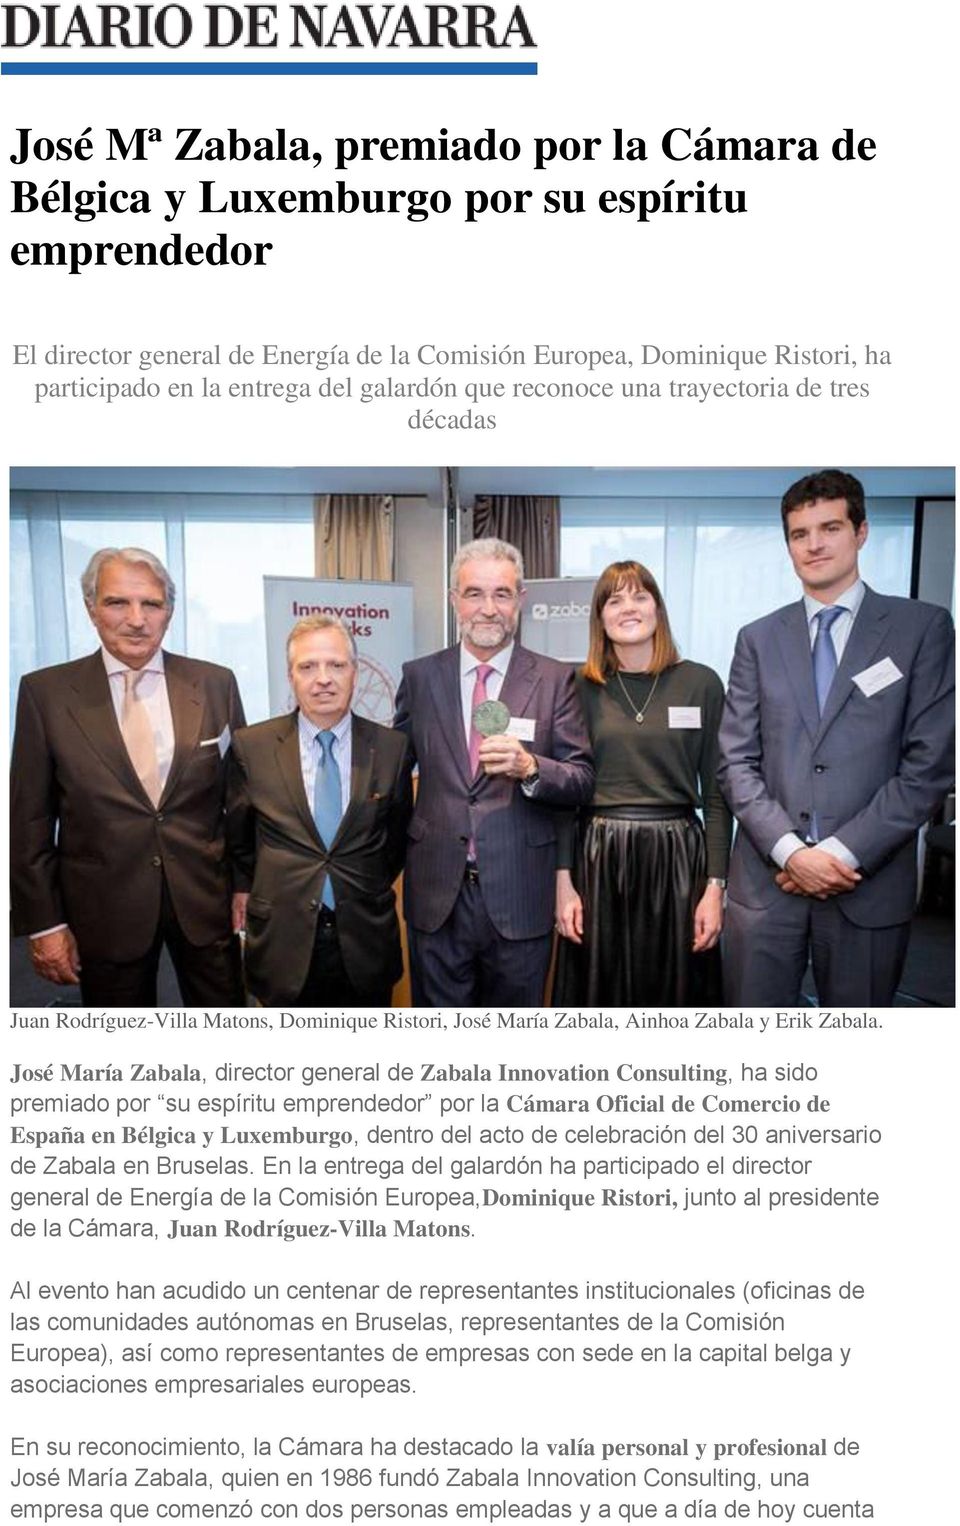 José María Zabala, director general de Zabala Innovation Consulting, ha sido premiado por su espíritu emprendedor por la Cámara Oficial de Comercio de España en Bélgica y Luxemburgo, dentro del acto